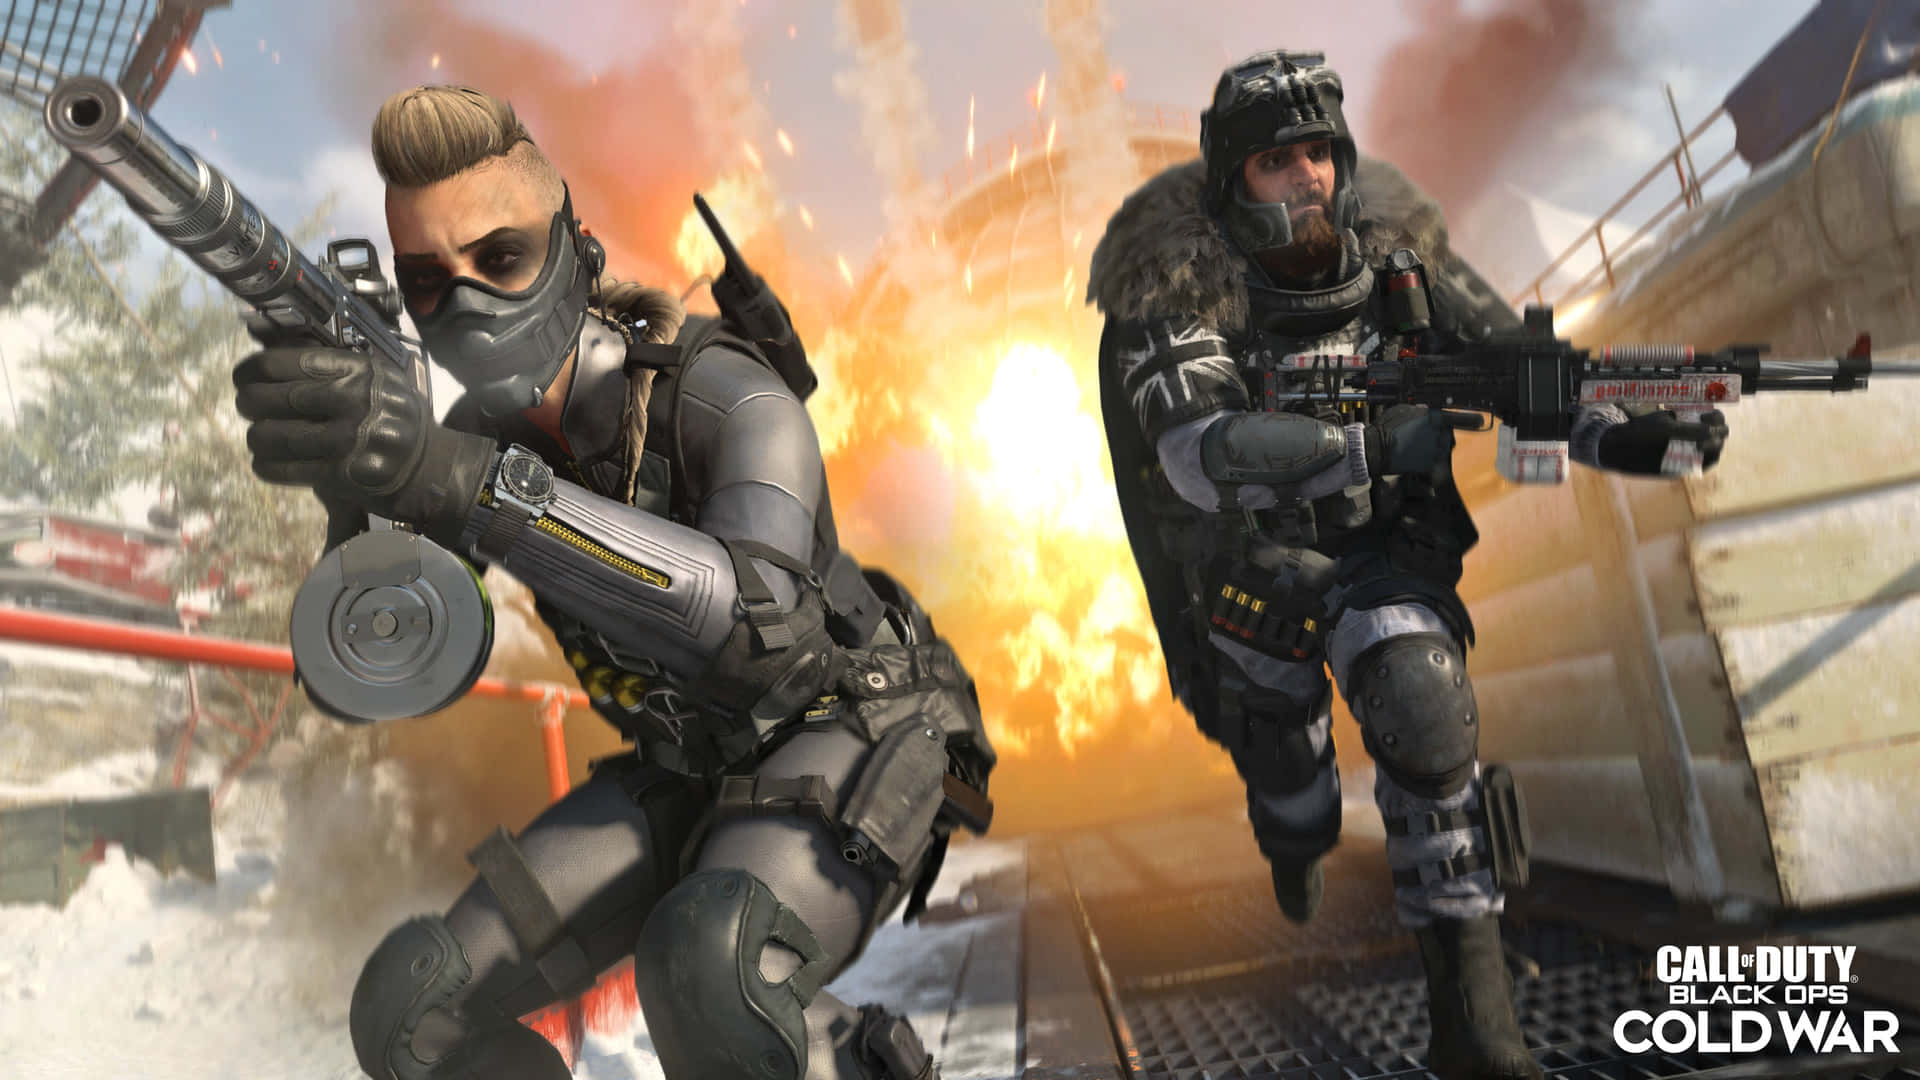 Hintergrundbildvon Roman Und Freya In Hd Für Call Of Duty Black Ops Cold War